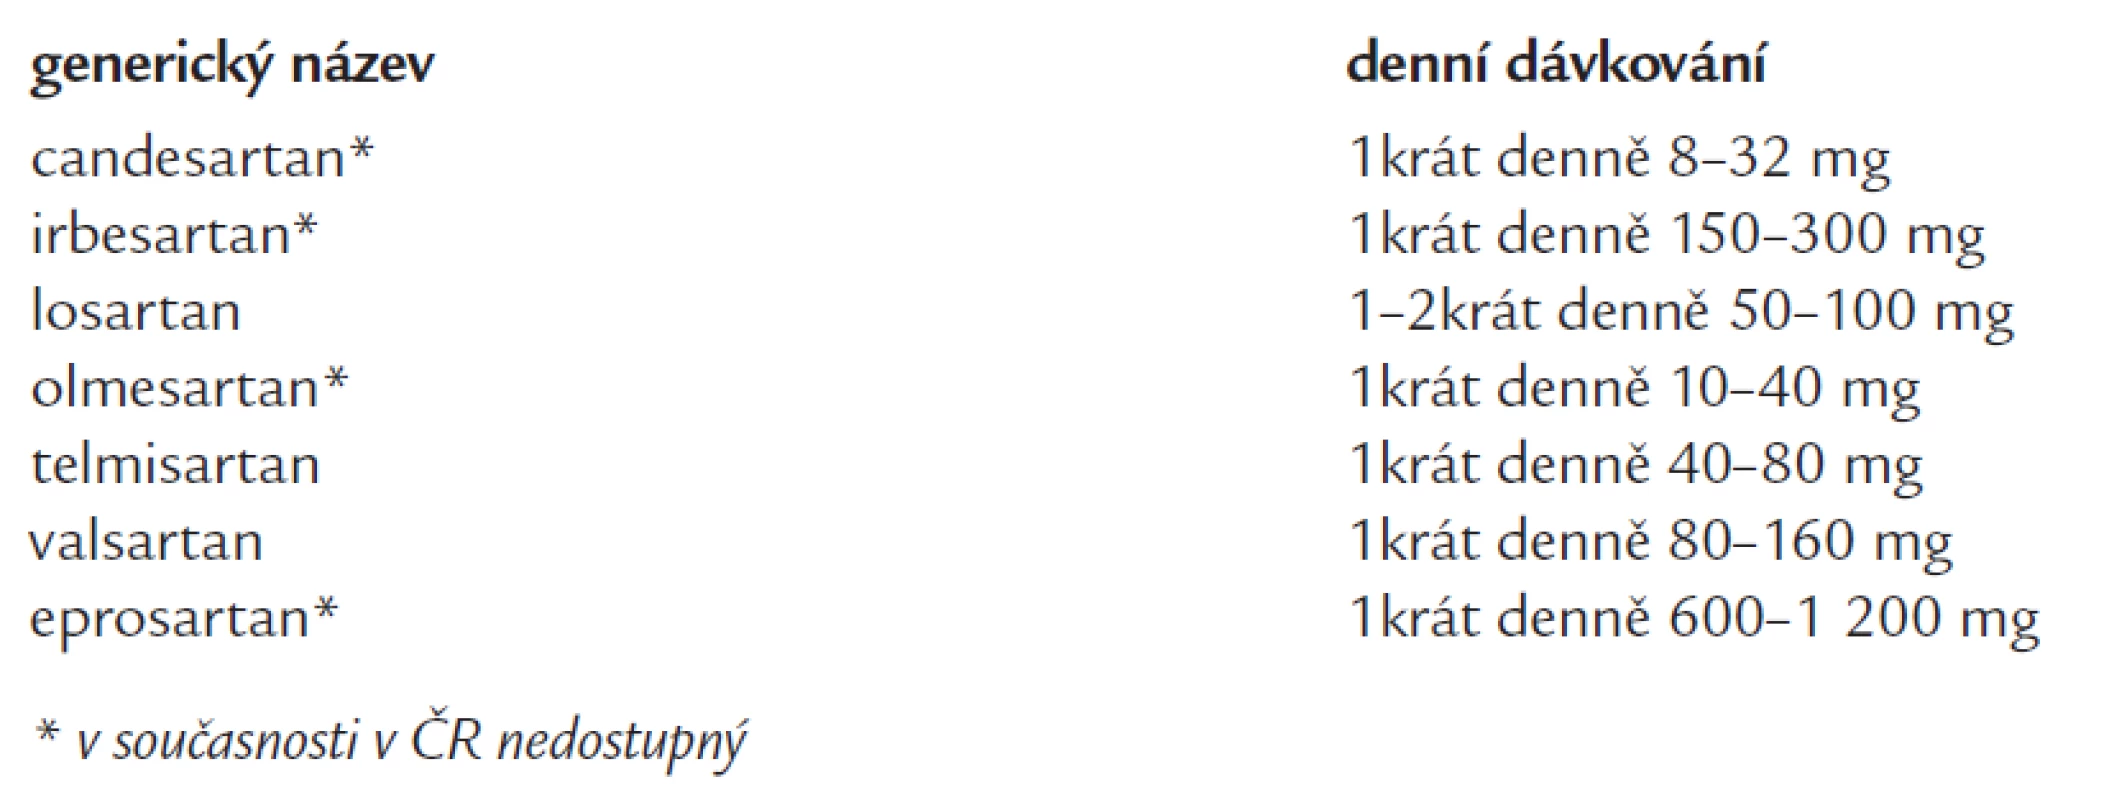 Přehled AT1-blokátorů nejčastěji užívaných v léčbě hypertenze (v abecedním pořadí).